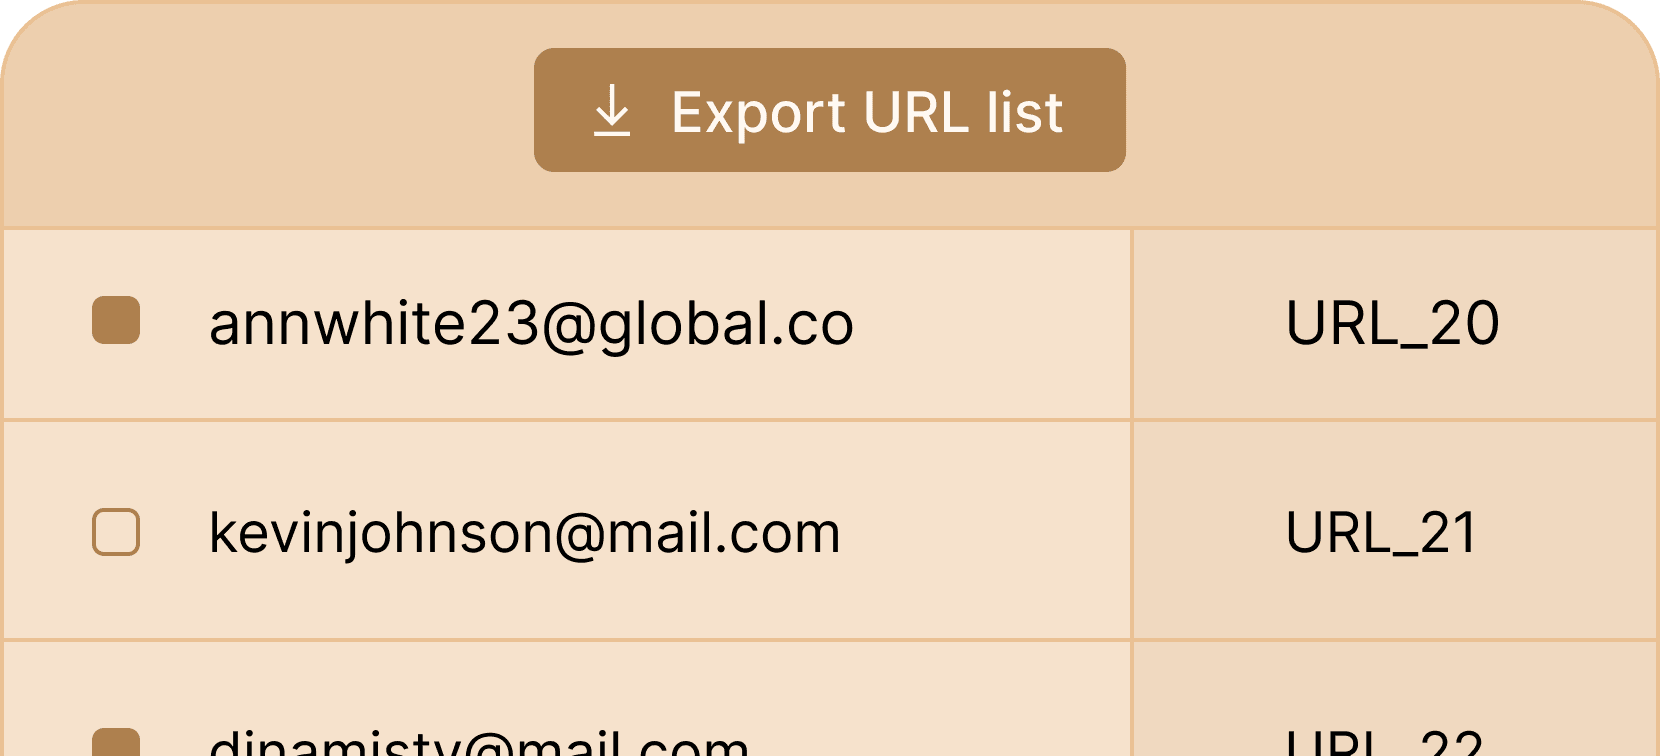 certifier-features-export-credentials-as-url-list